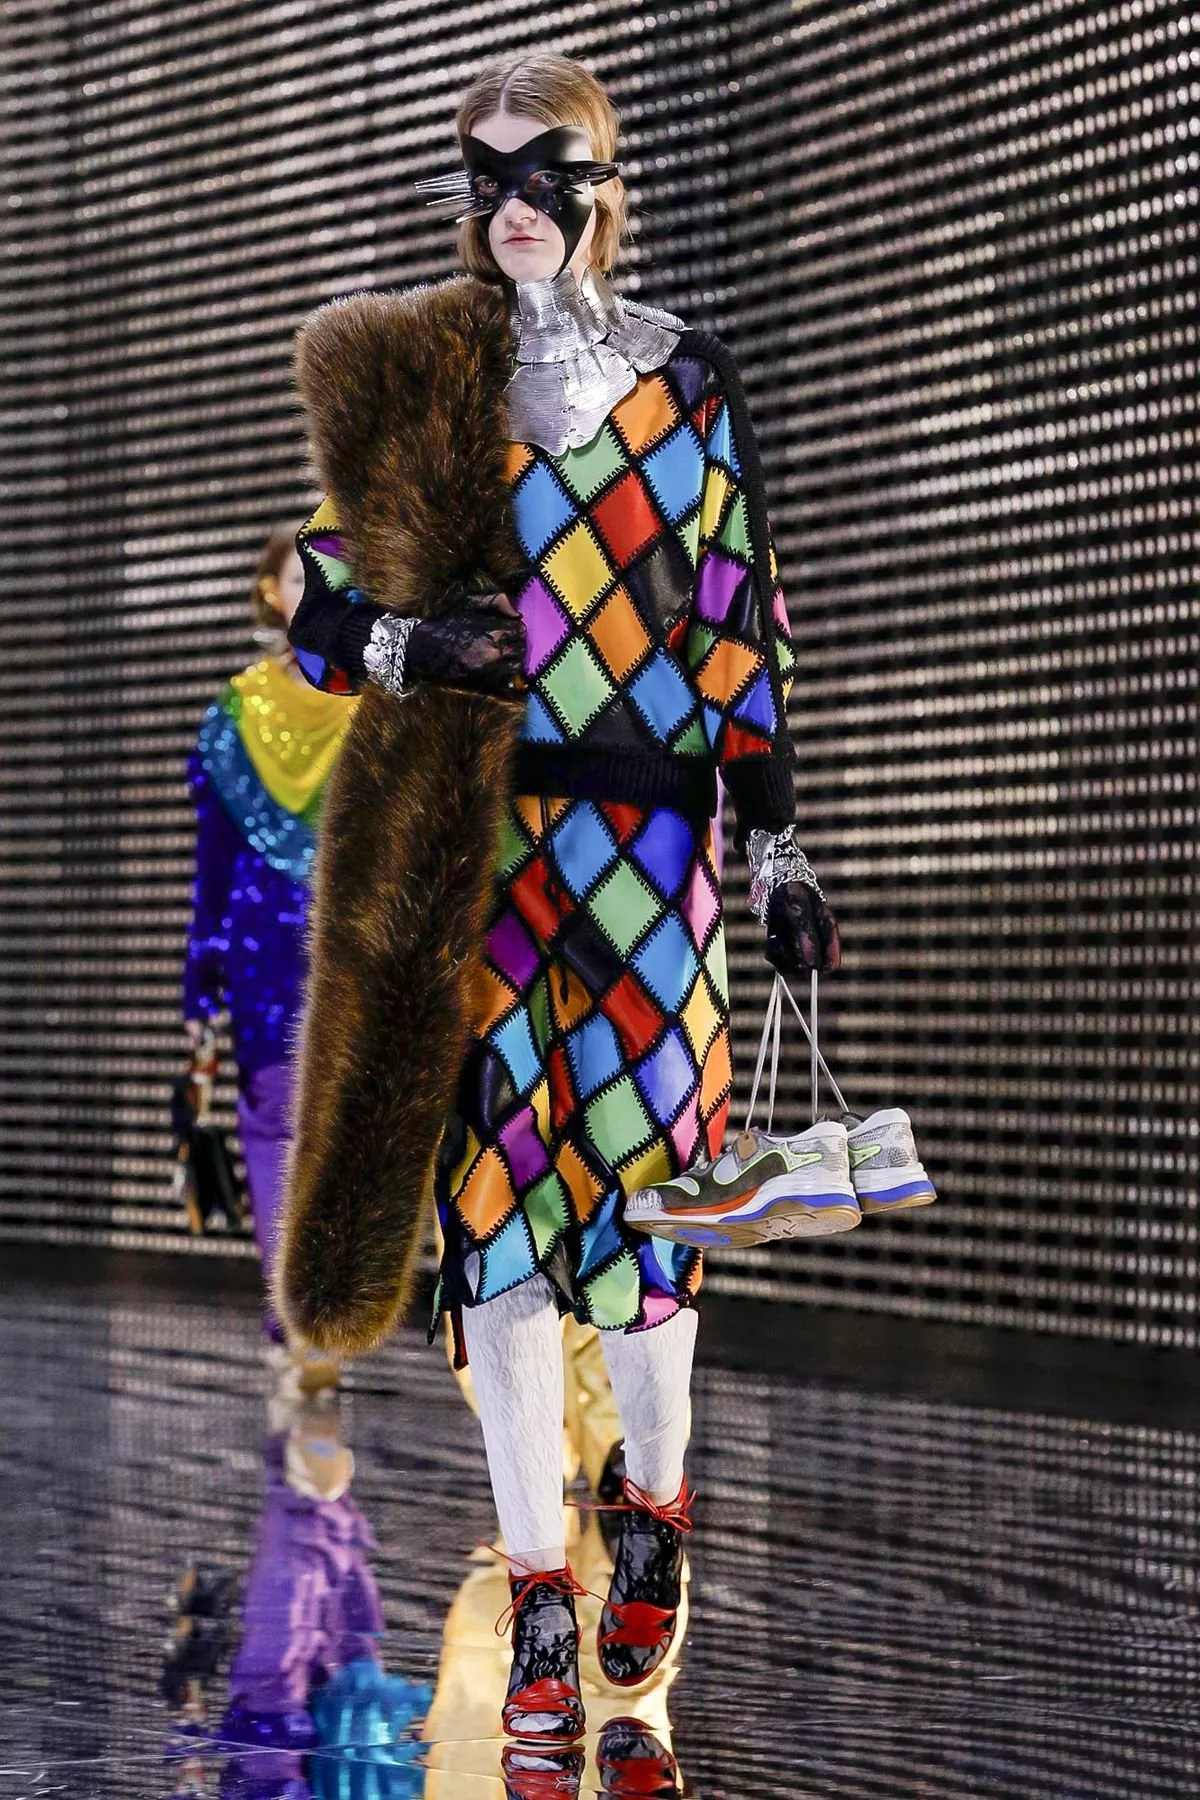 مجموعة Gucci للأزياء الجاهزة لخريف 2019: تفاصيل صغيرة وتنسيقات مبتكرة